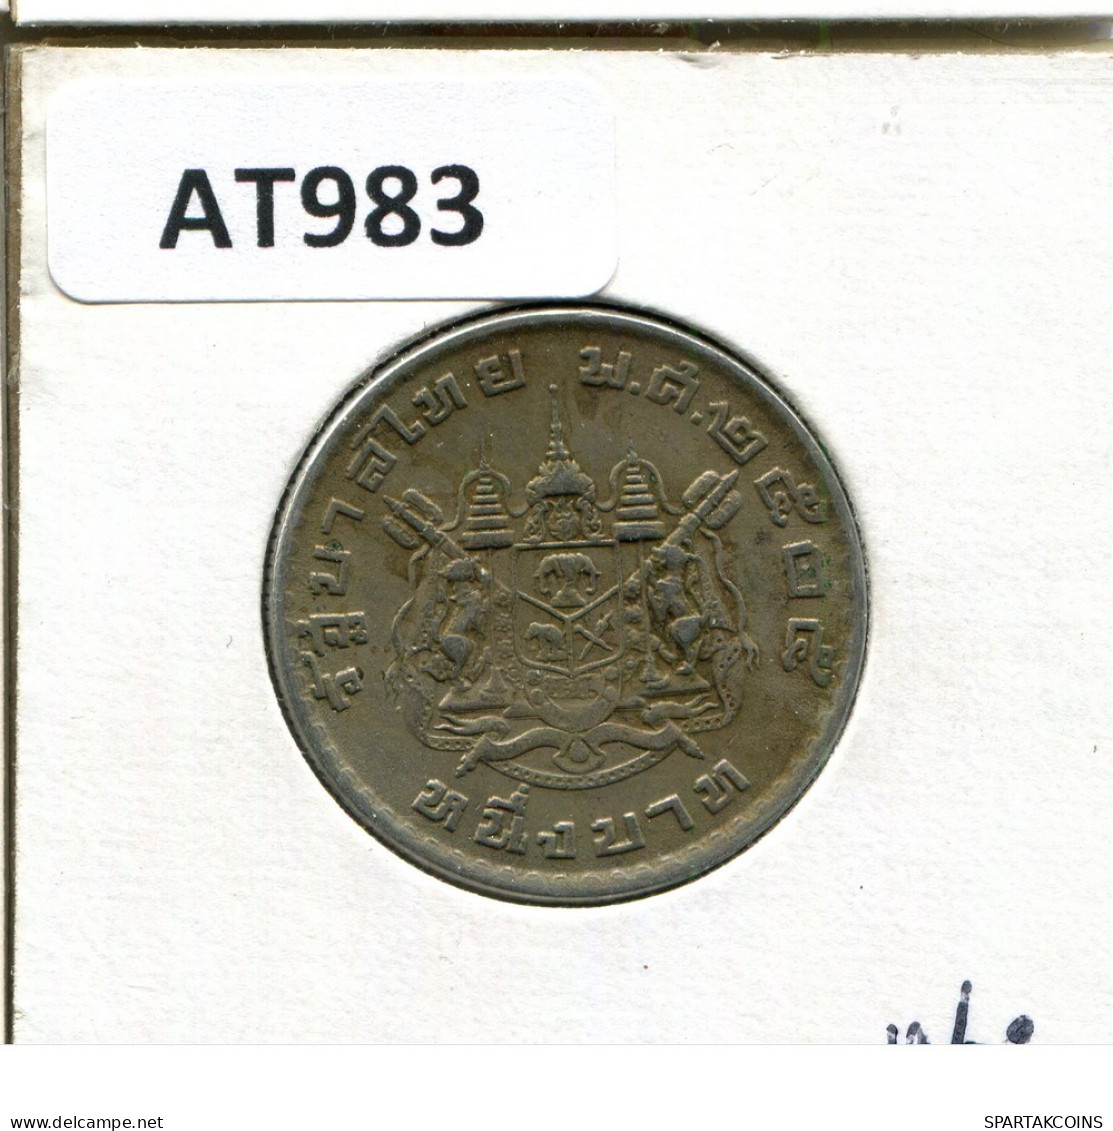 1 BAHT 1962 THAILAND Coin #AT983.U.A - Thailand